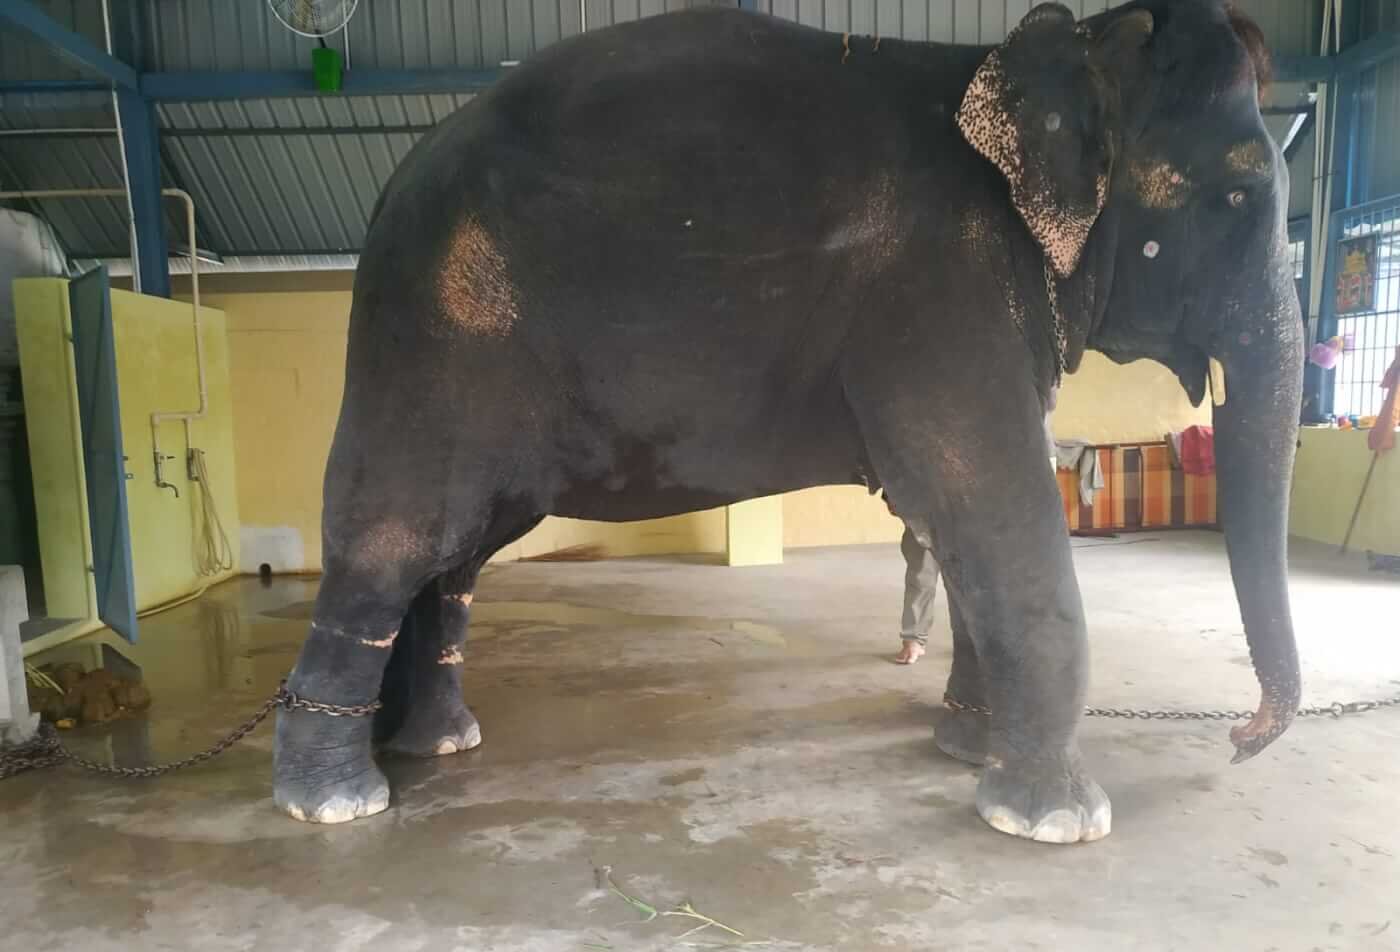 URGENT! Help Us Rescue Bullied Elephant Jeymalyatha